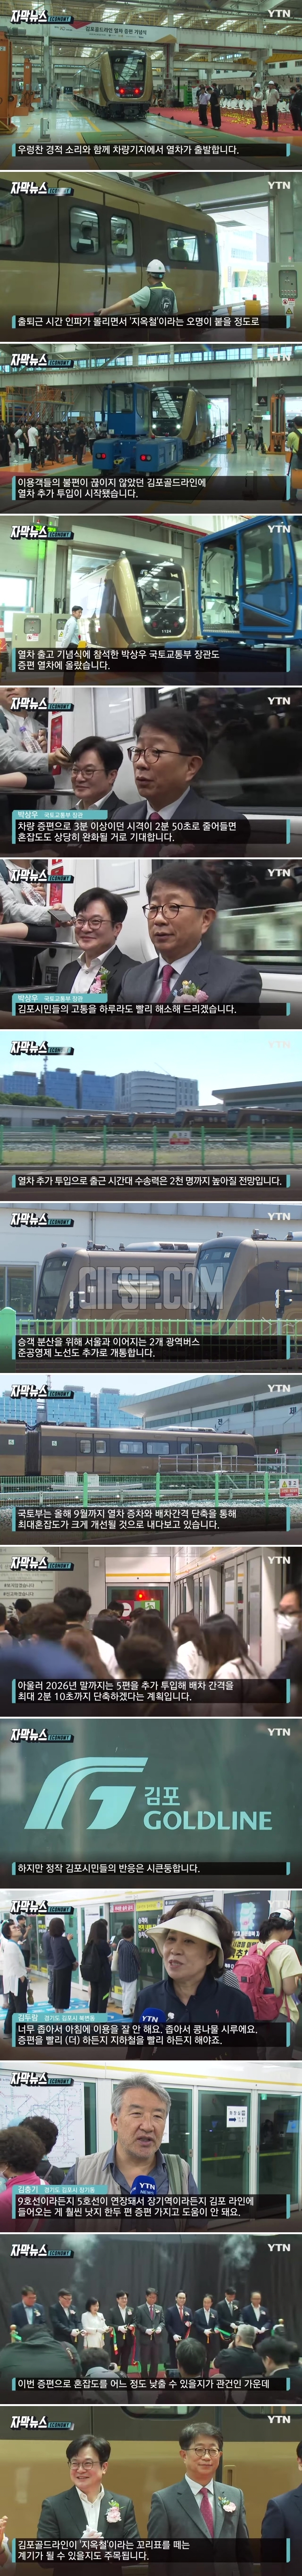 새 열차 투입된 ',지옥철', 김포골드라인.시민들은 못마땅.jpg